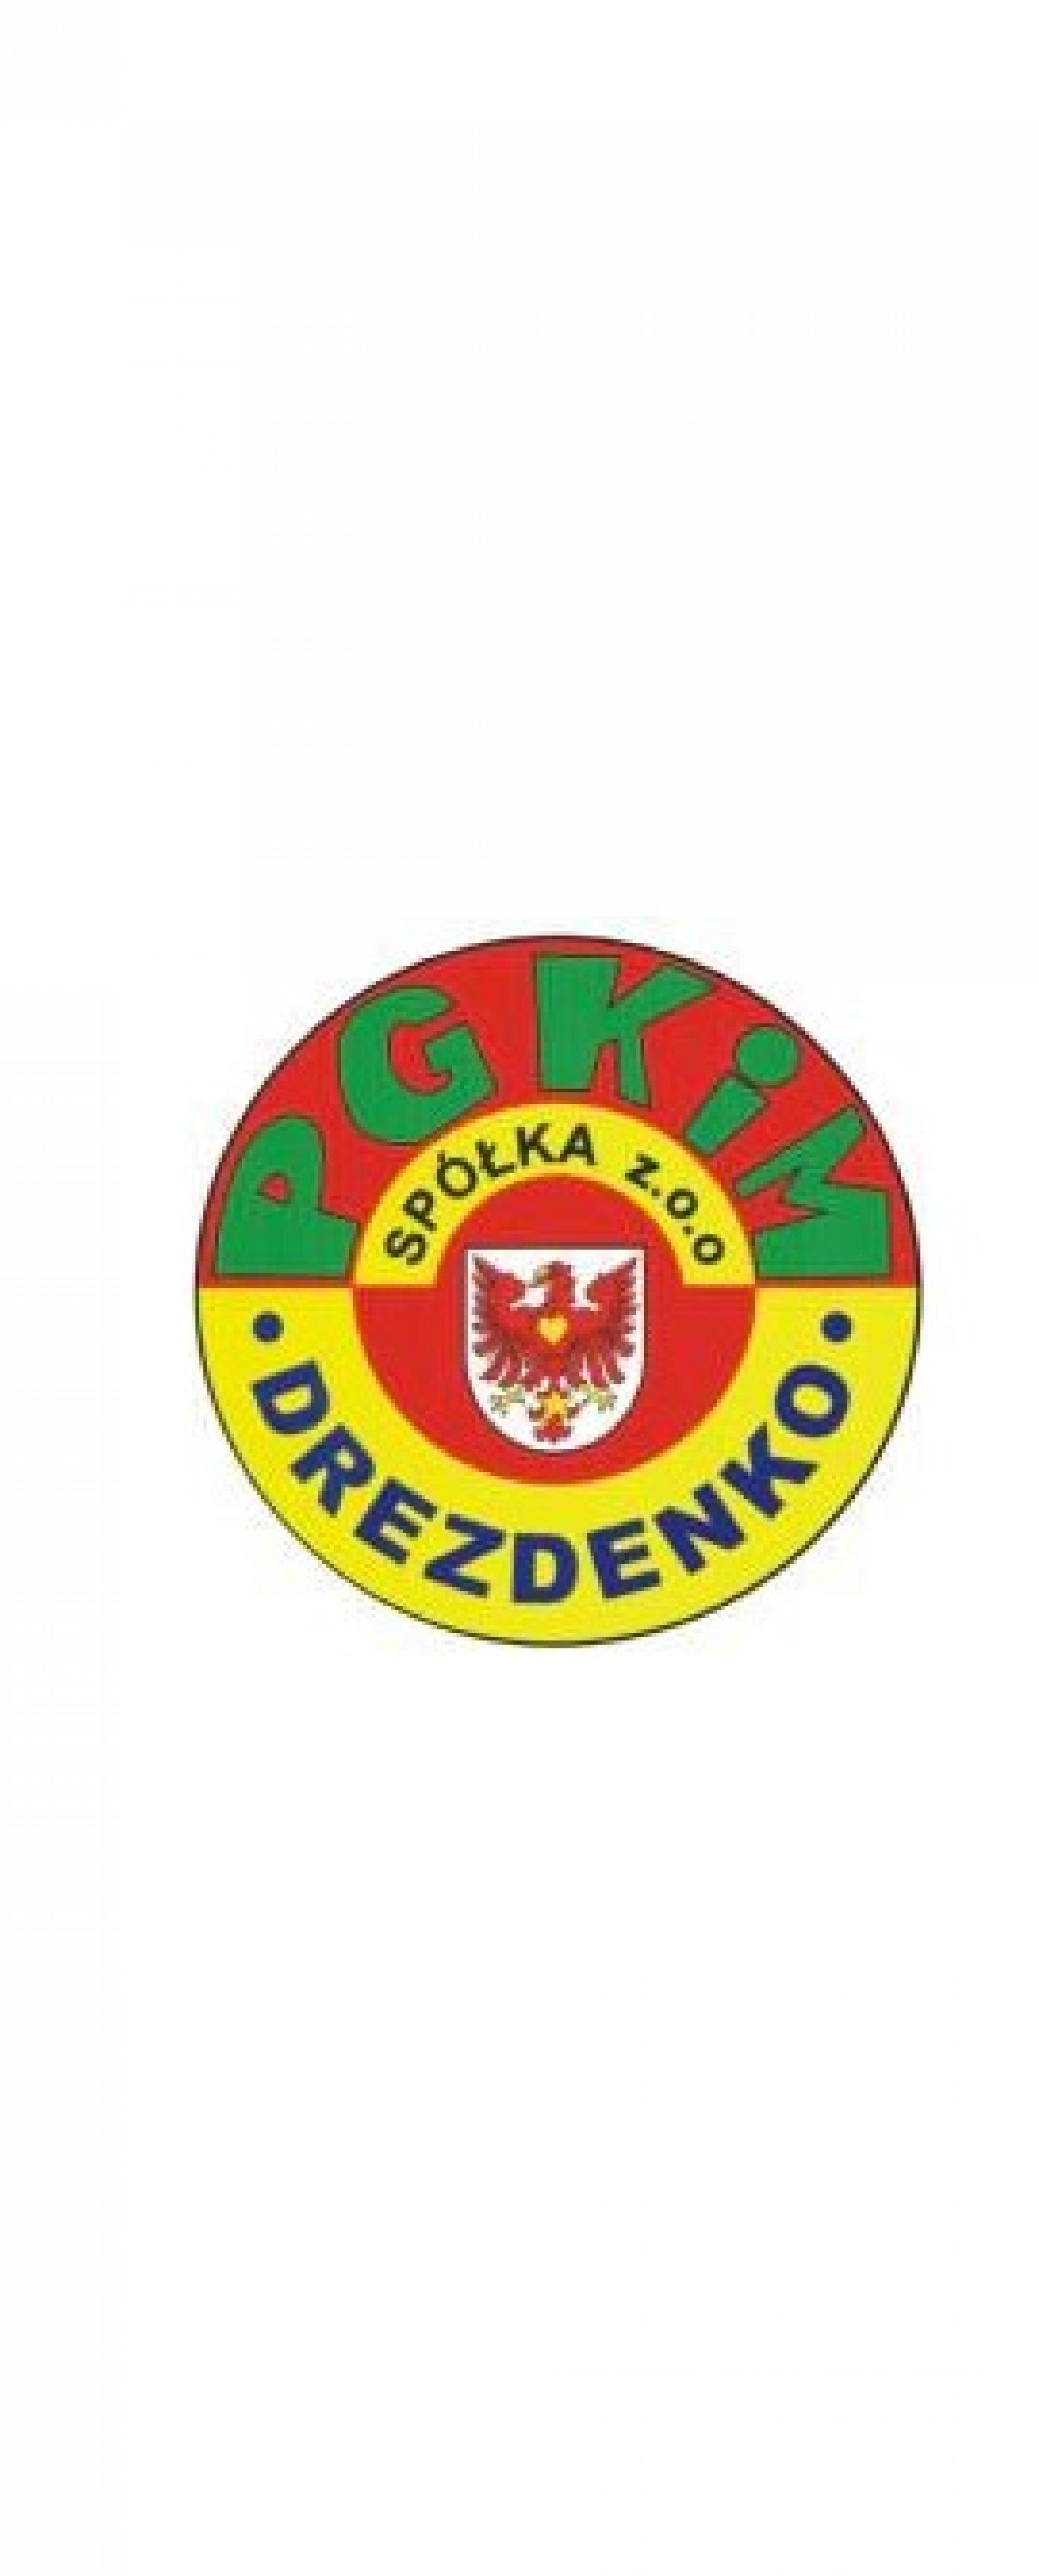 Ogłoszenie o naborze na wolne stanowisko pracy w PGKiM Drezdenko